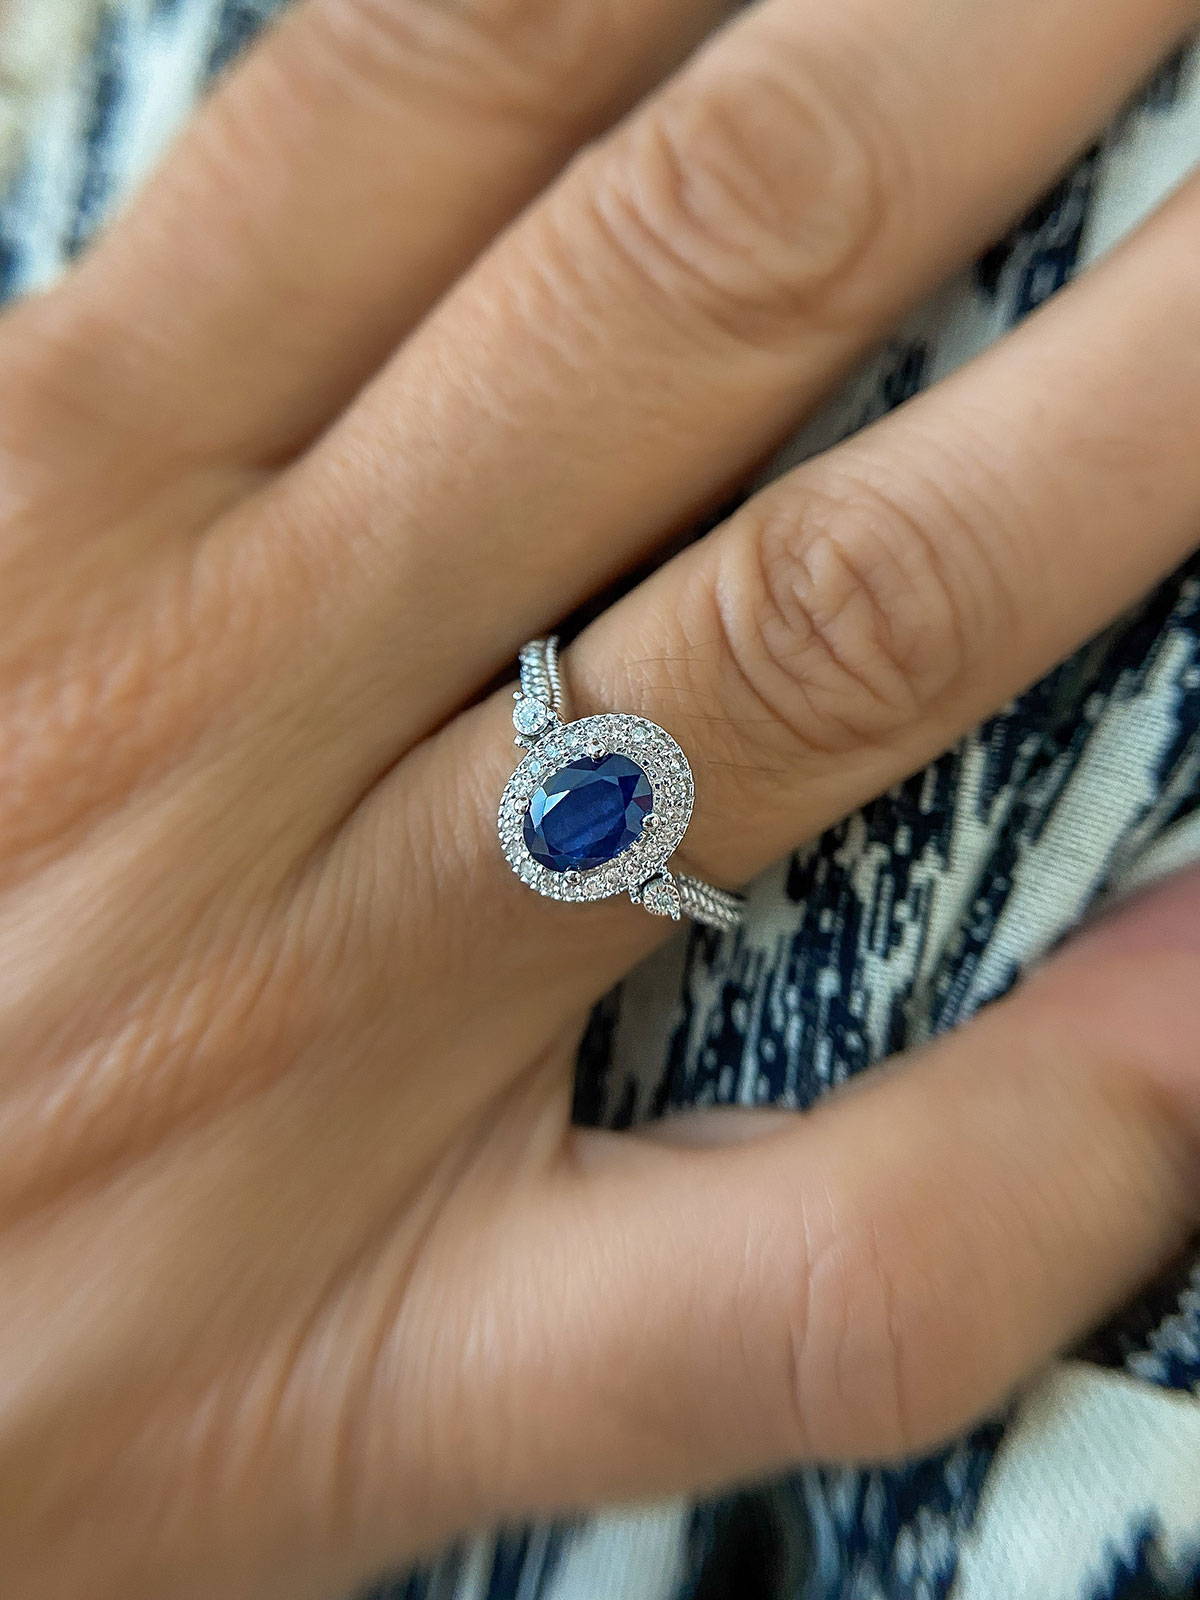 The Bluesette Engagement Ring